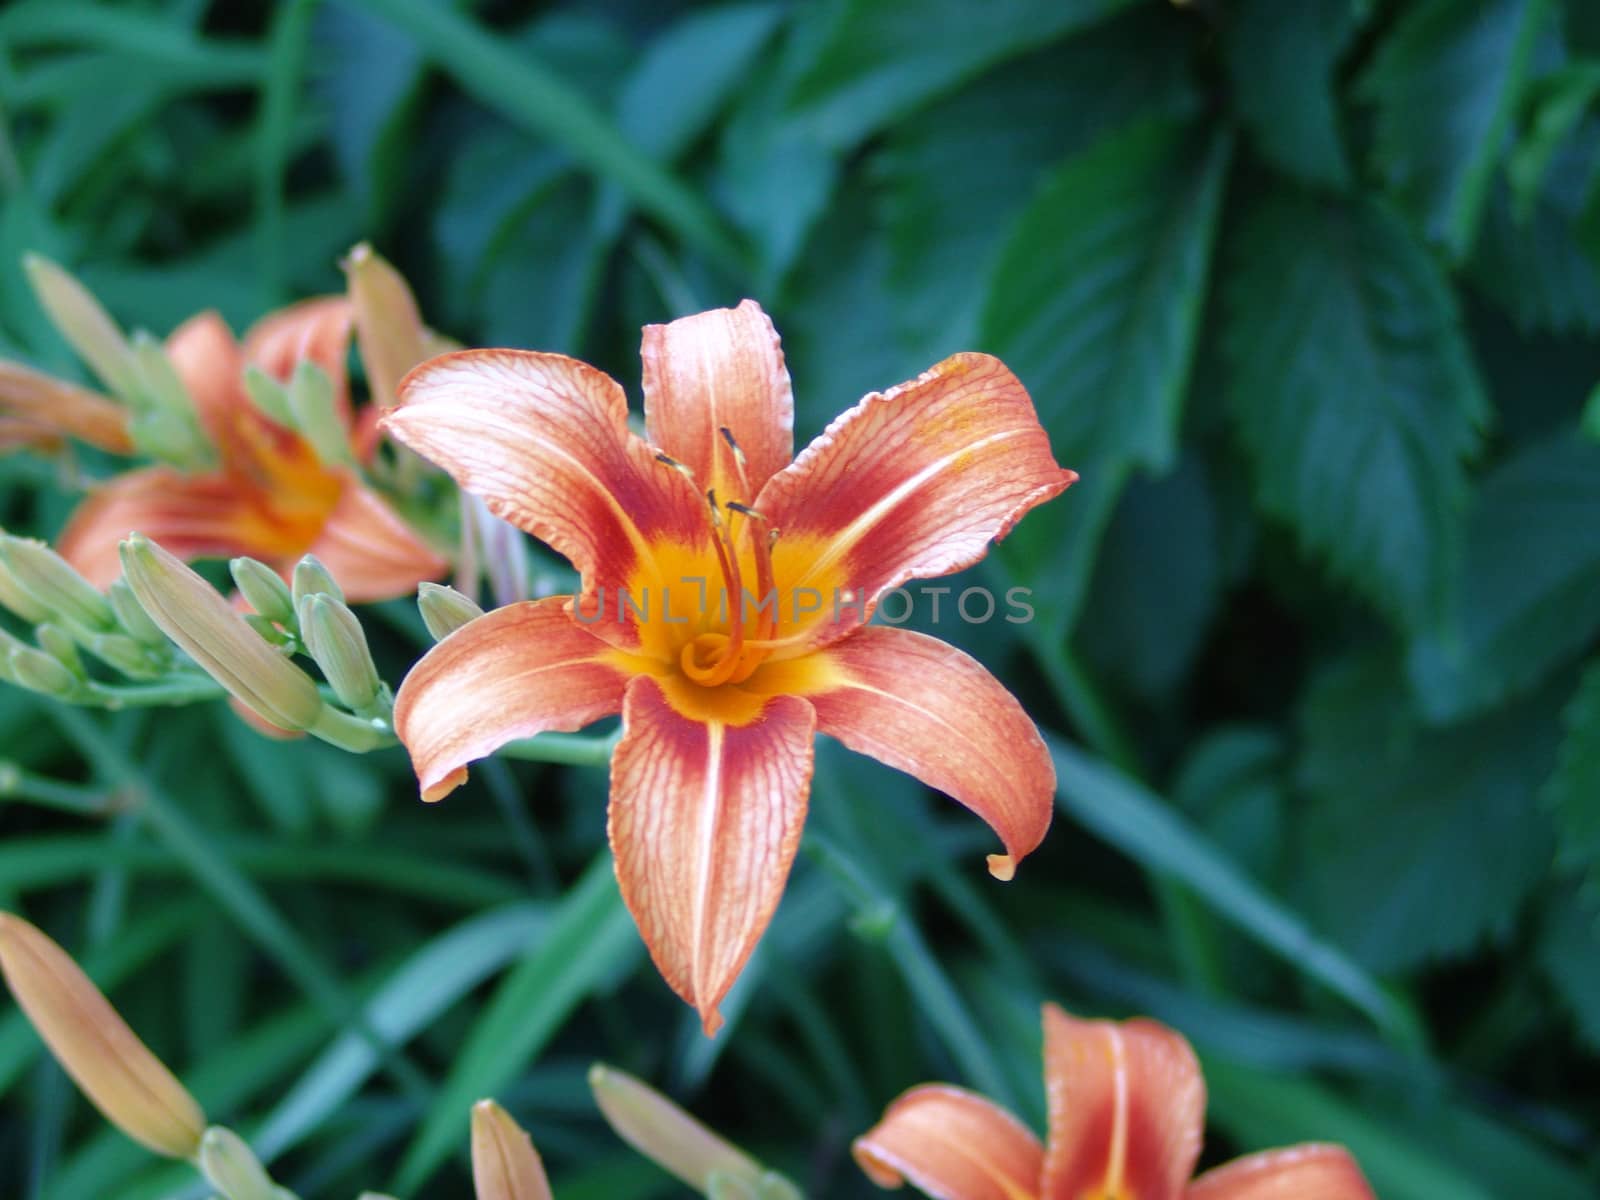 Orange lilies flowers. by elena_vz